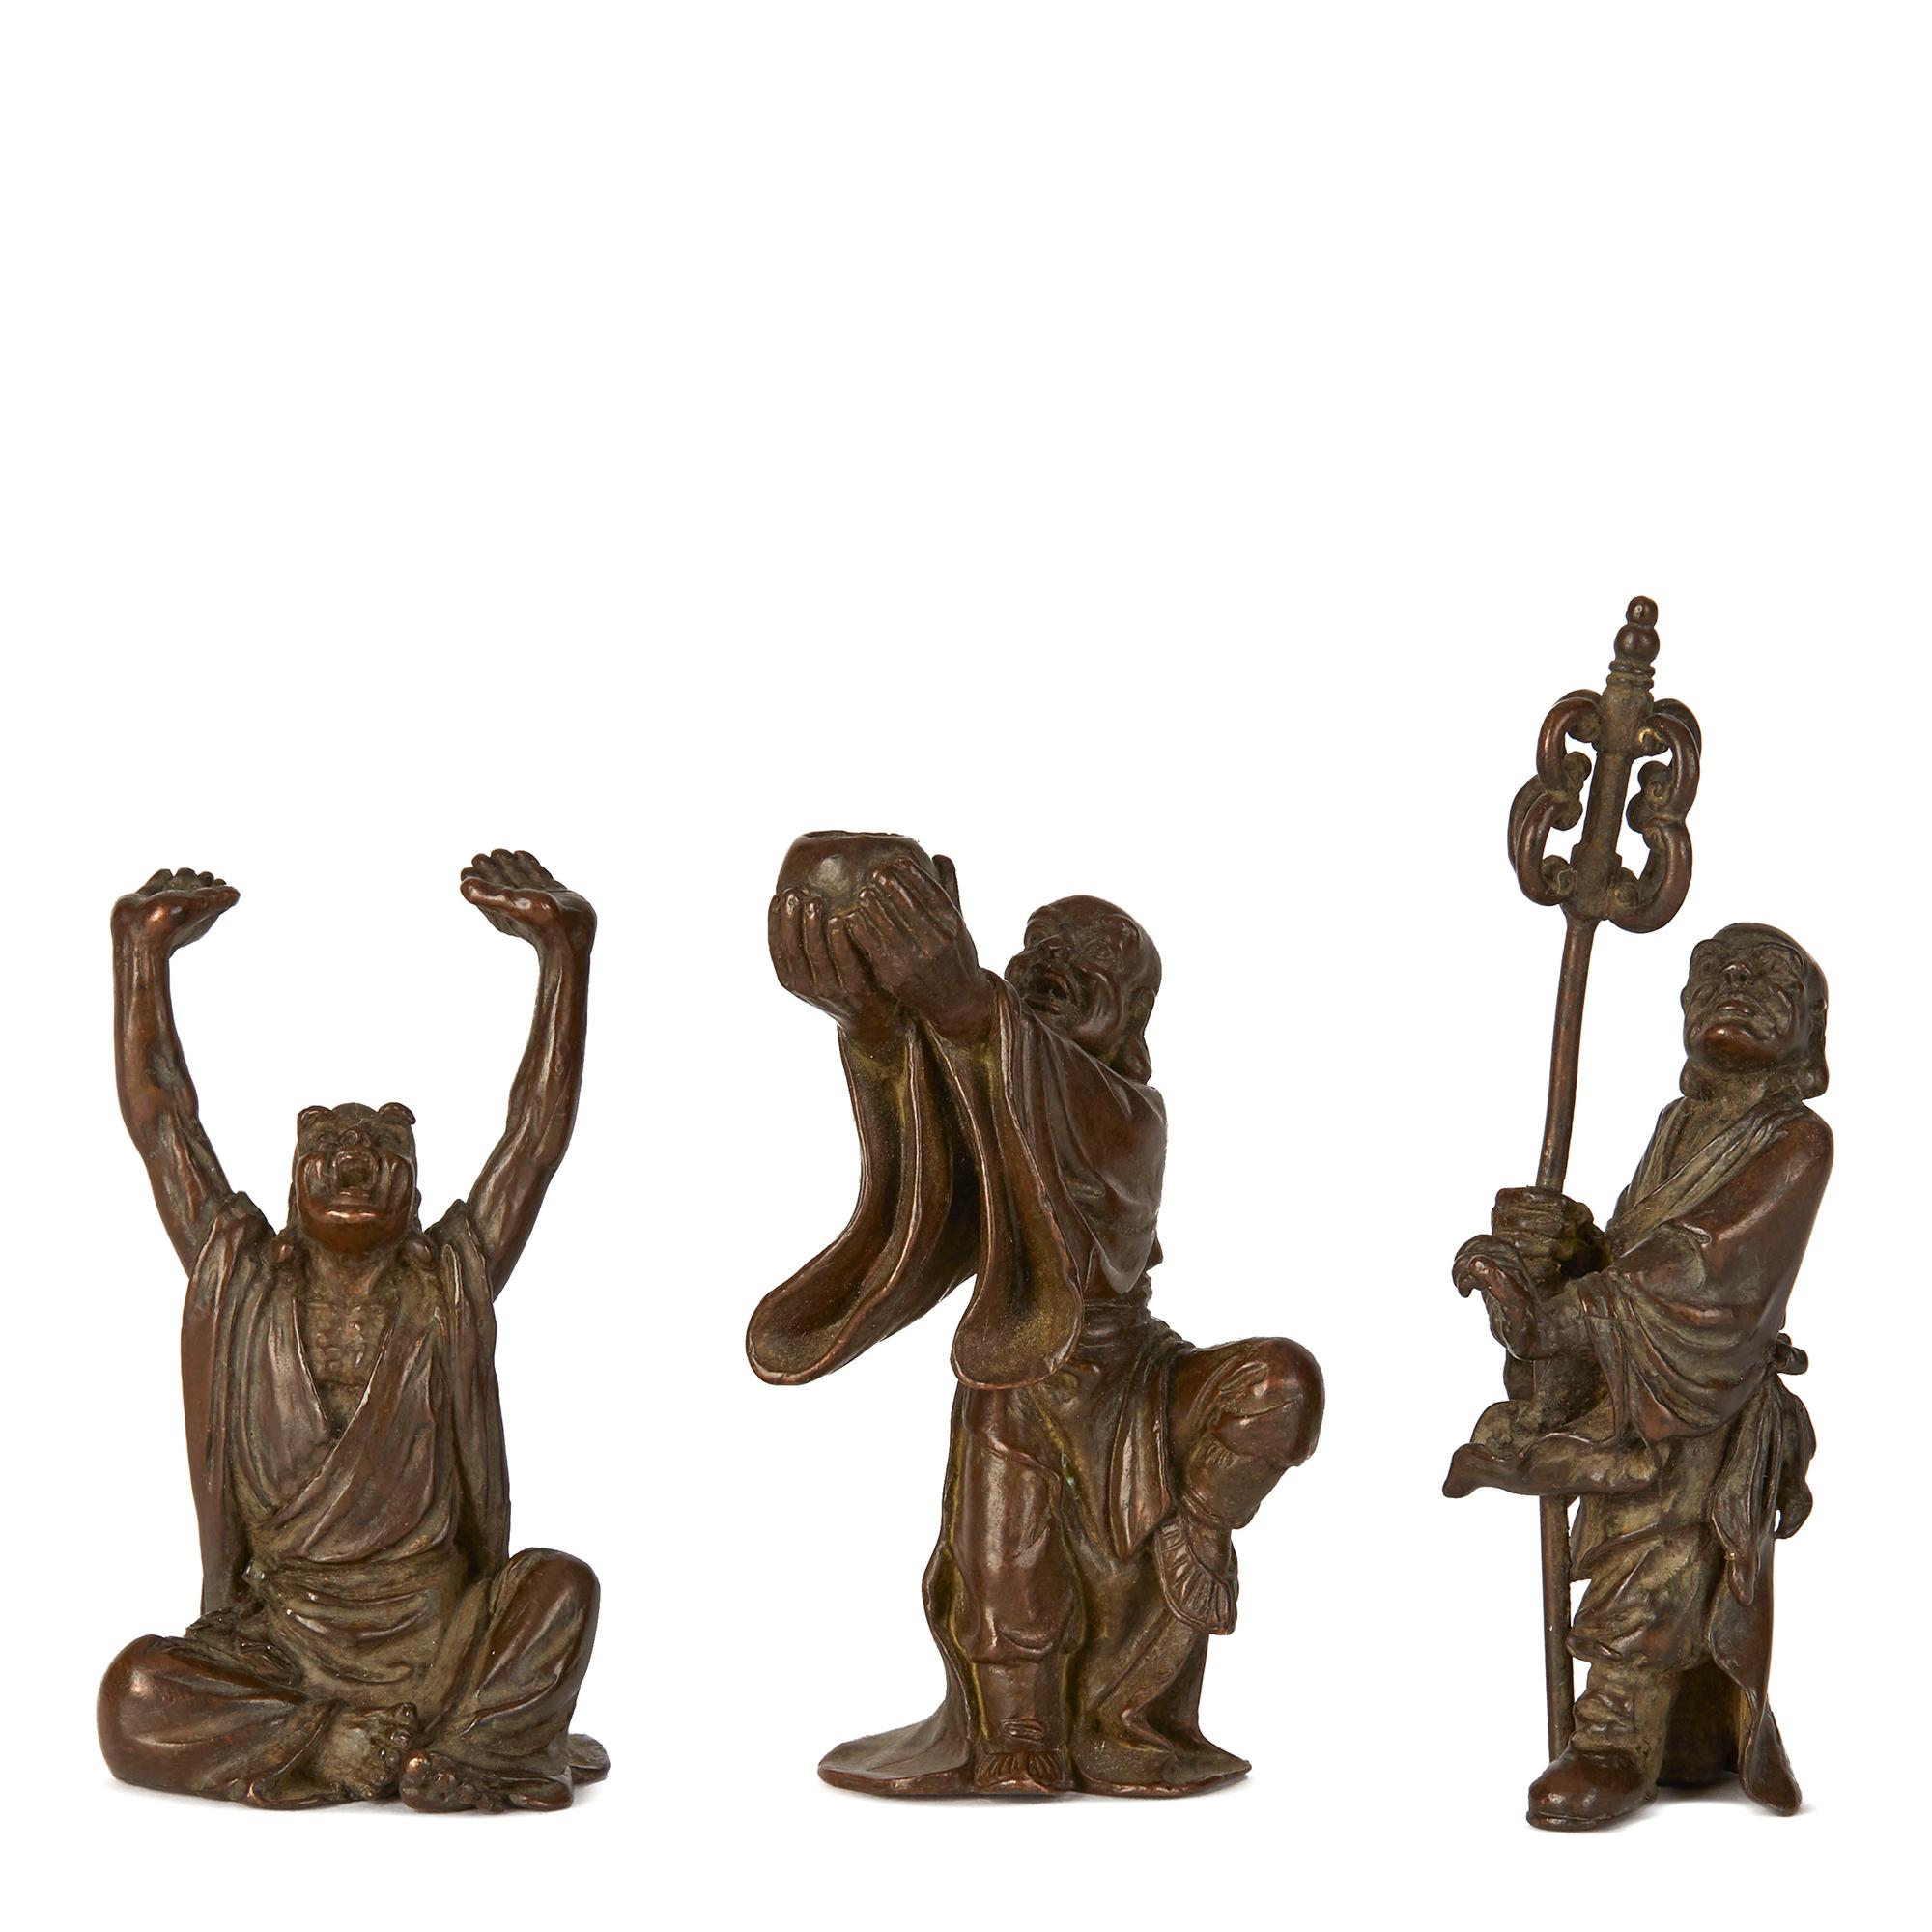 Eine äußerst seltene Bronzesammlung der achtzehn (Archats) Luohan-Jünger, wie sie in der chinesischen buddhistischen Kultur dargestellt sind. Die Figuren sind außergewöhnlich gut gemacht und stellen die Luohan in ihren jeweiligen Kräften dar. Sie